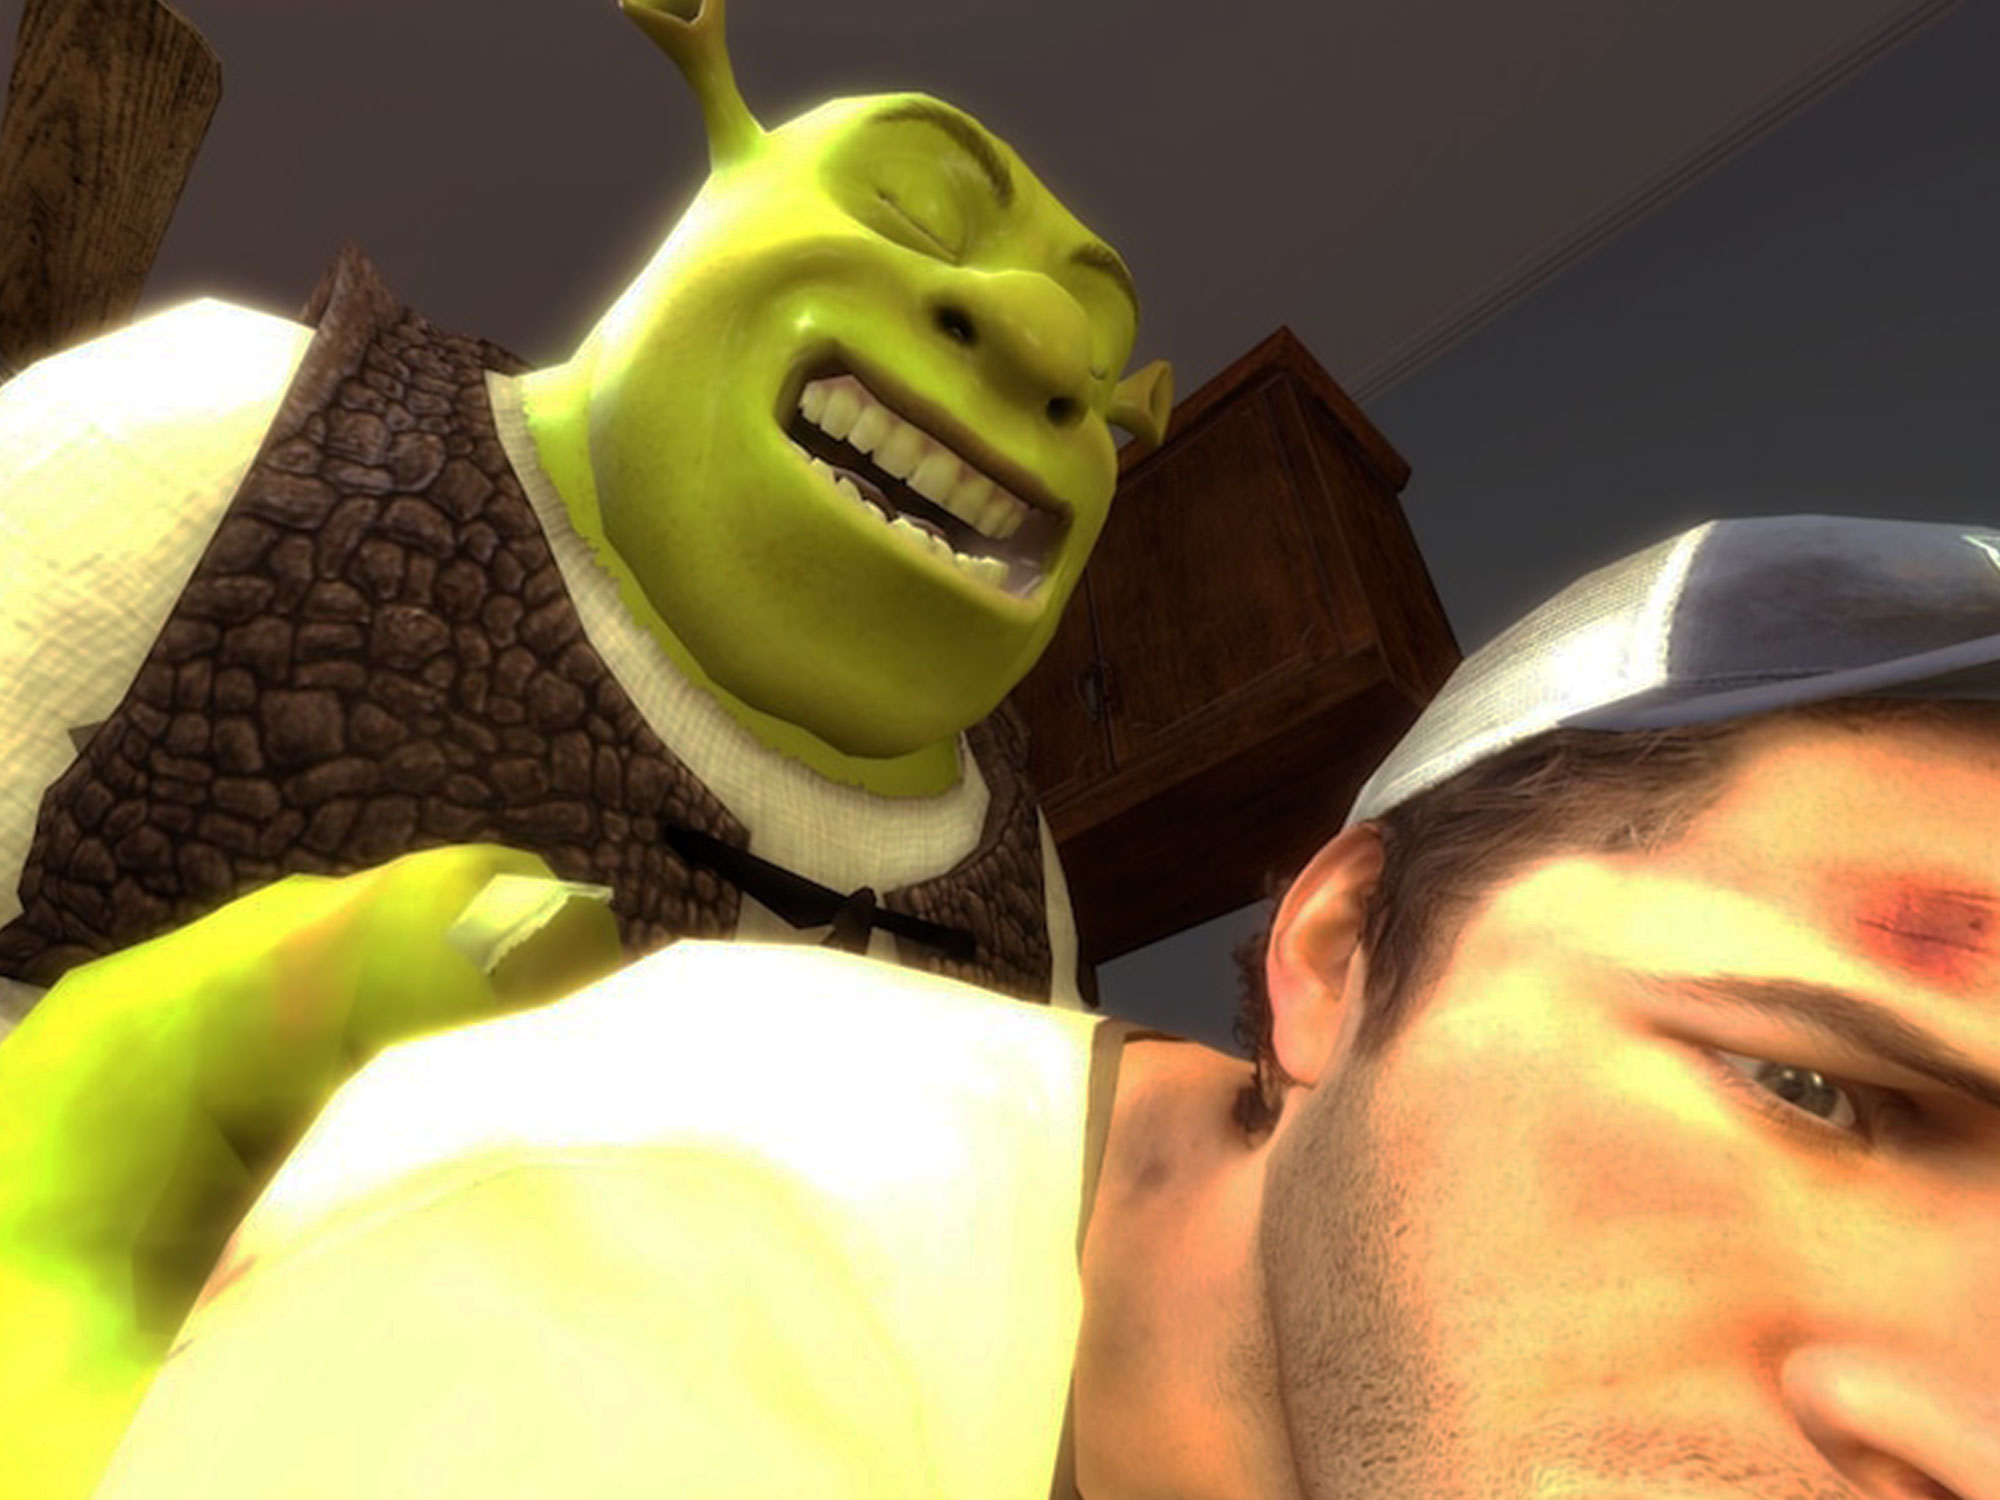 Shrek is love, Shrek is life meme.